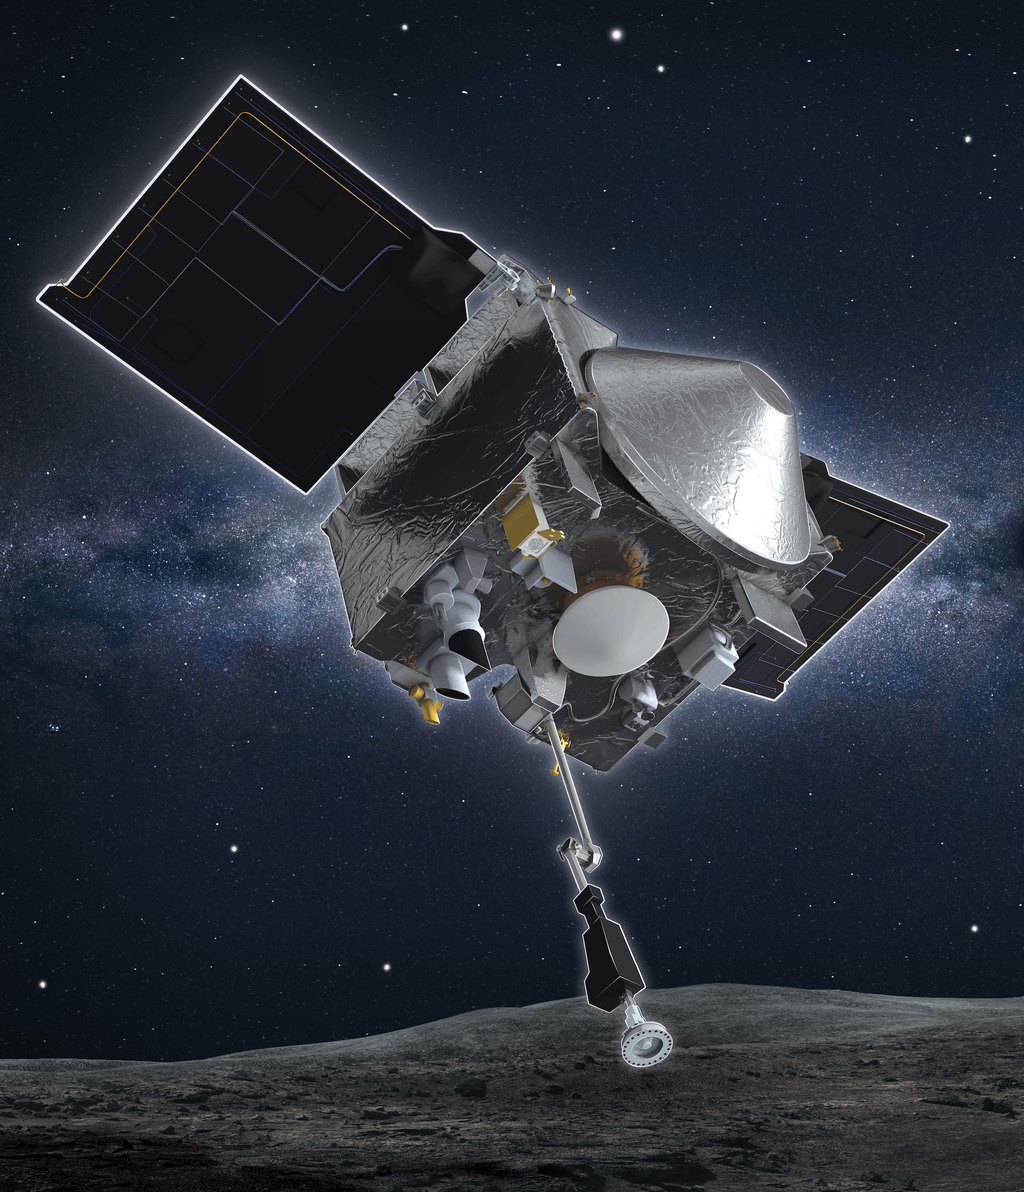 Concepção artística da sonda OSIRIS-REx durante a coleta de amostras (Imagem: Reprodução/NASA/Goddard/University of Arizona)